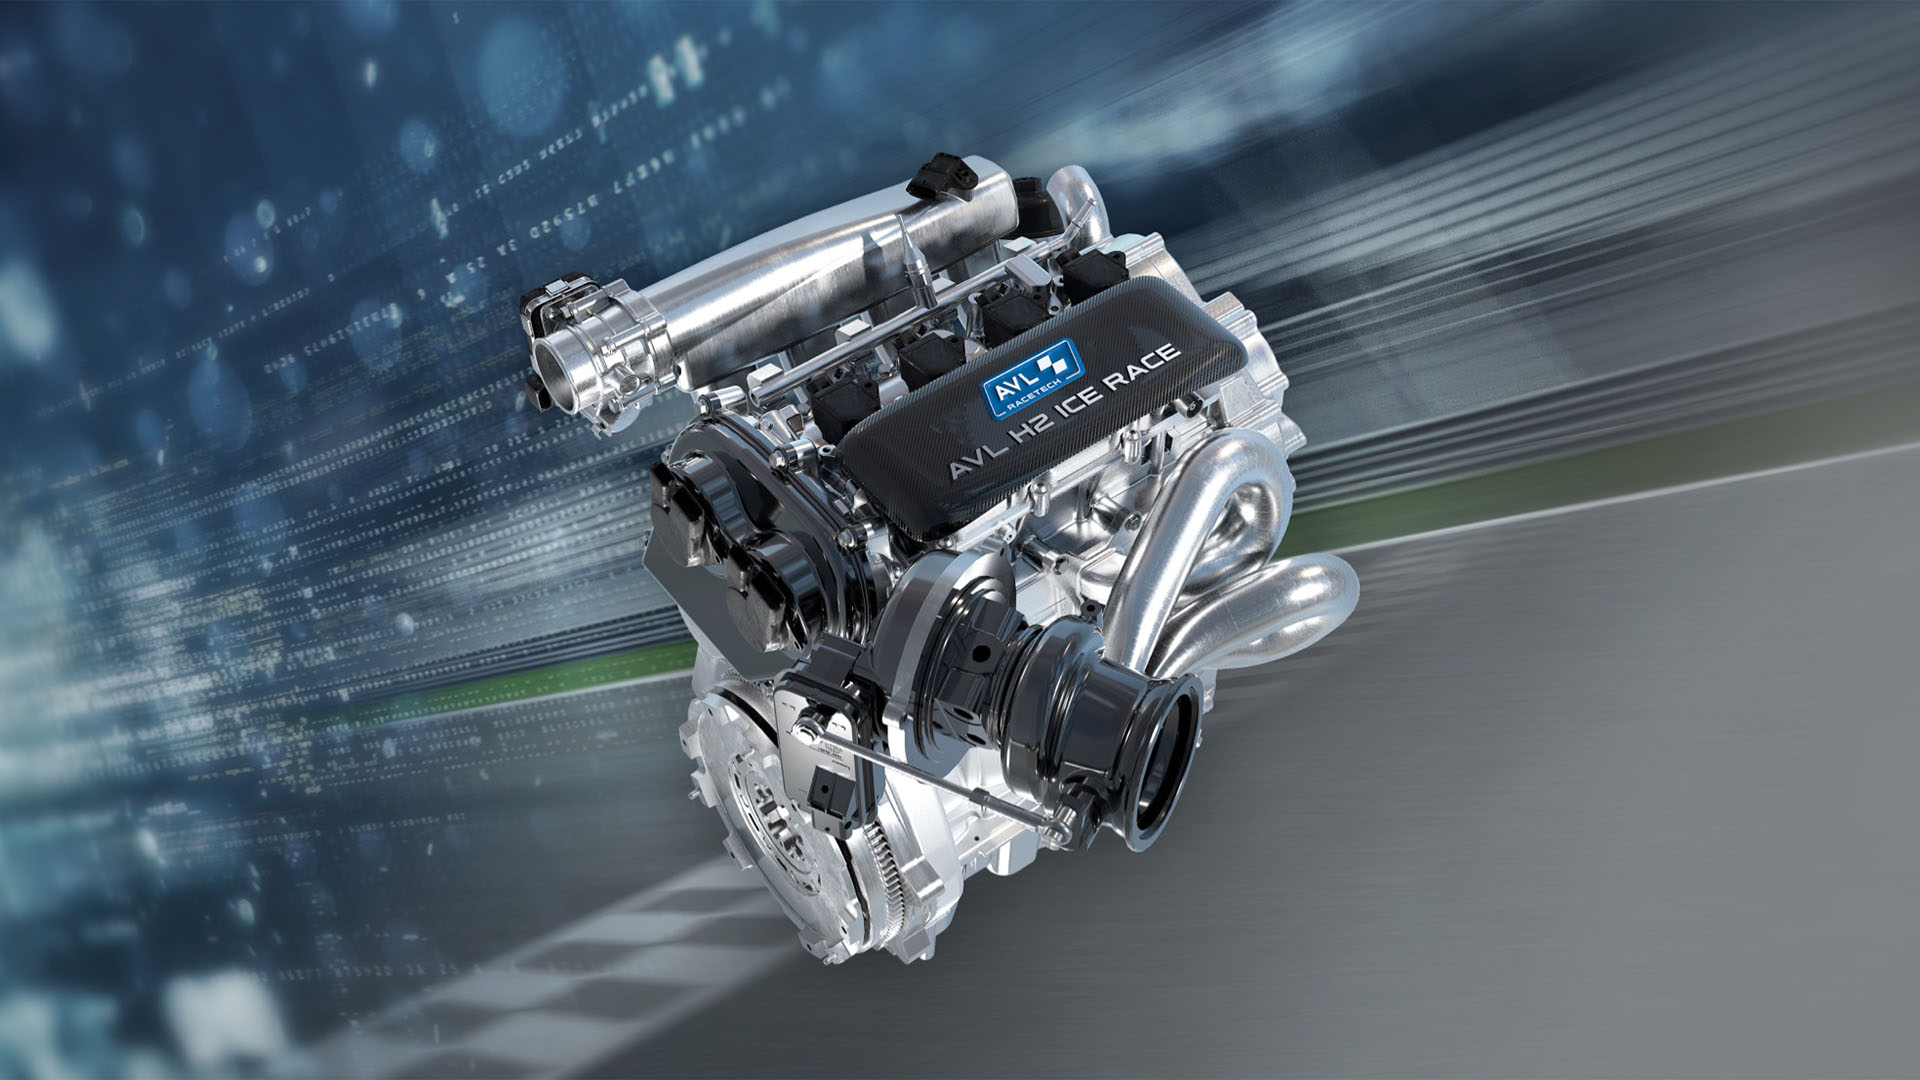 AVL Racetech es una empresa austríaca que desarrolló este motor de combustión interna que reemplaza completamente la gasolina por hidrógeno y lo mezcla con agua como innovación